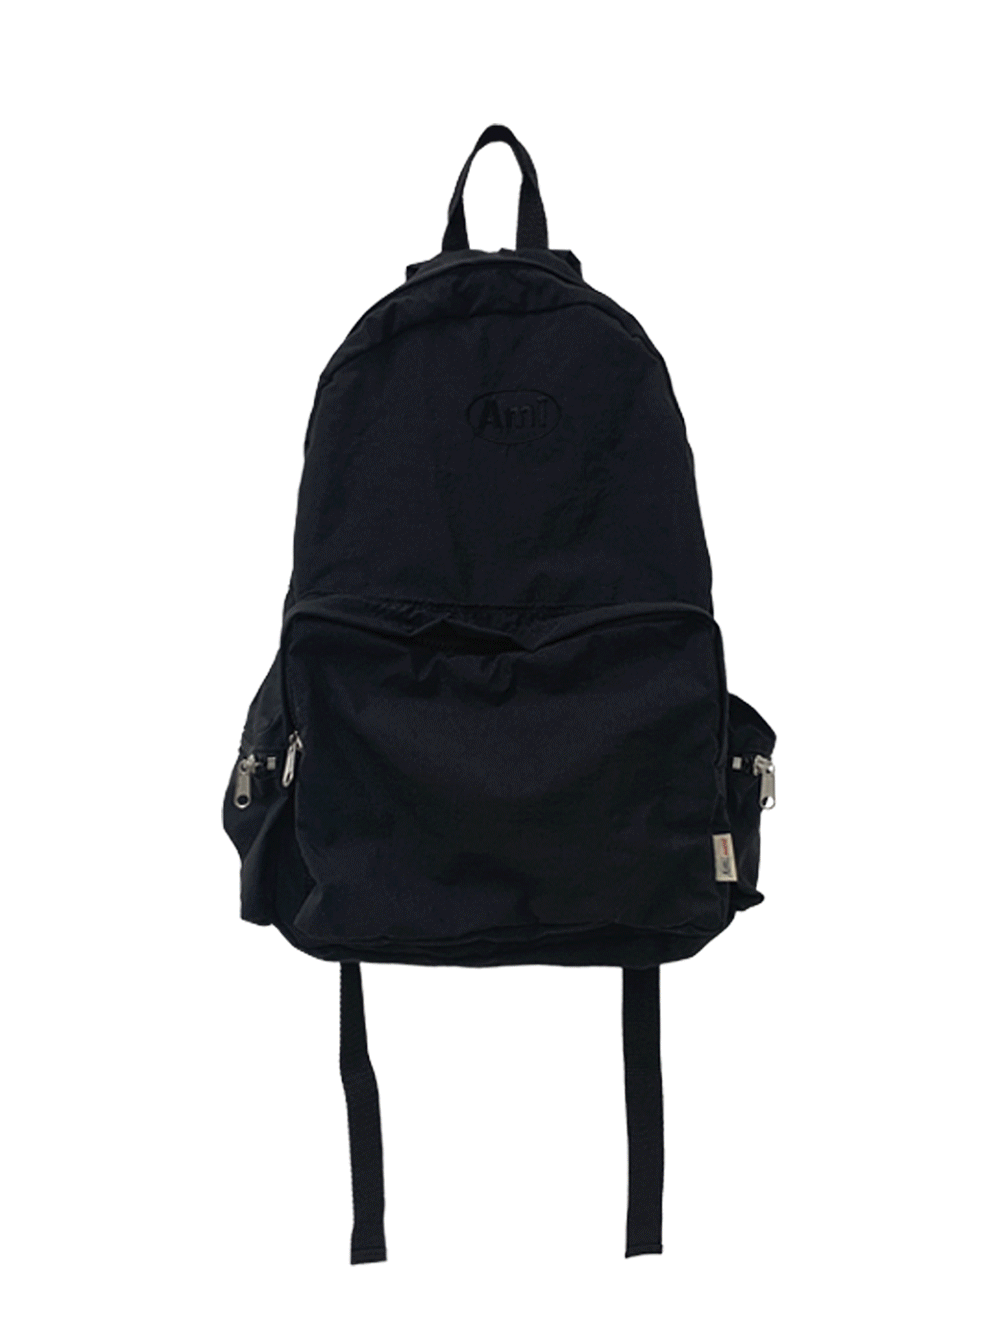 camper backpack - bag